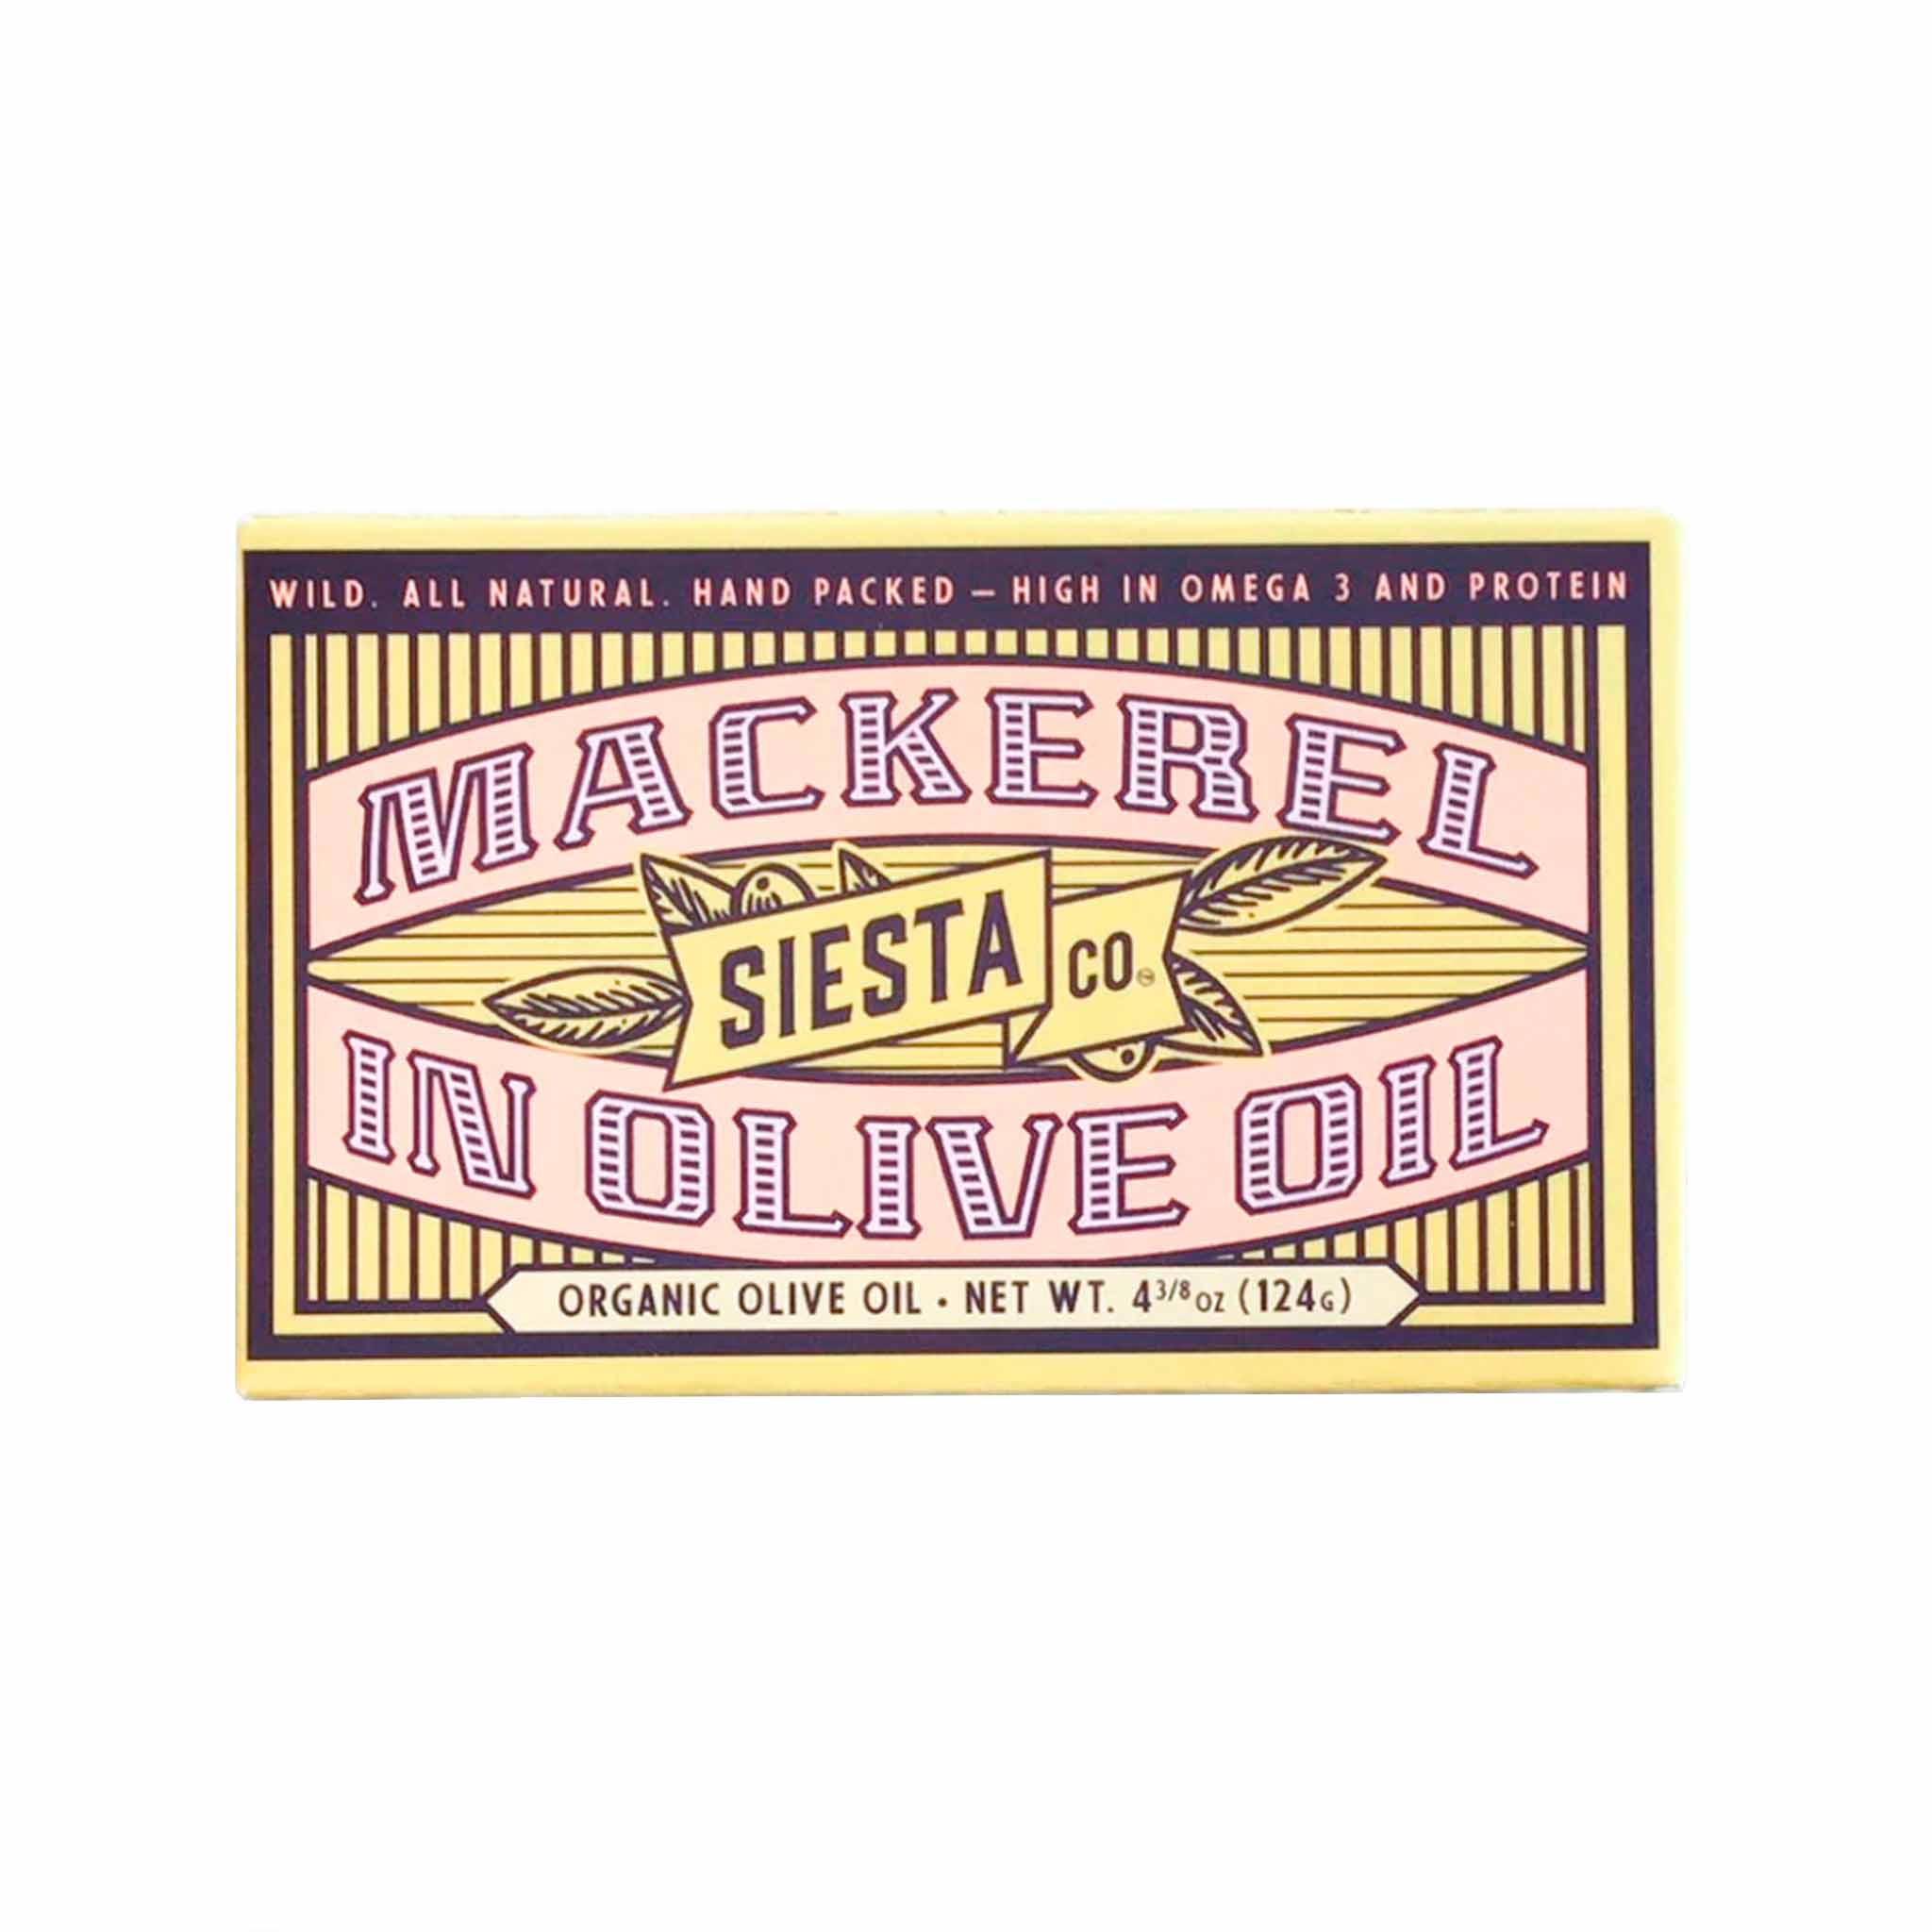 Siesta Co. Mackerel in Extra Virgin Olive Oil